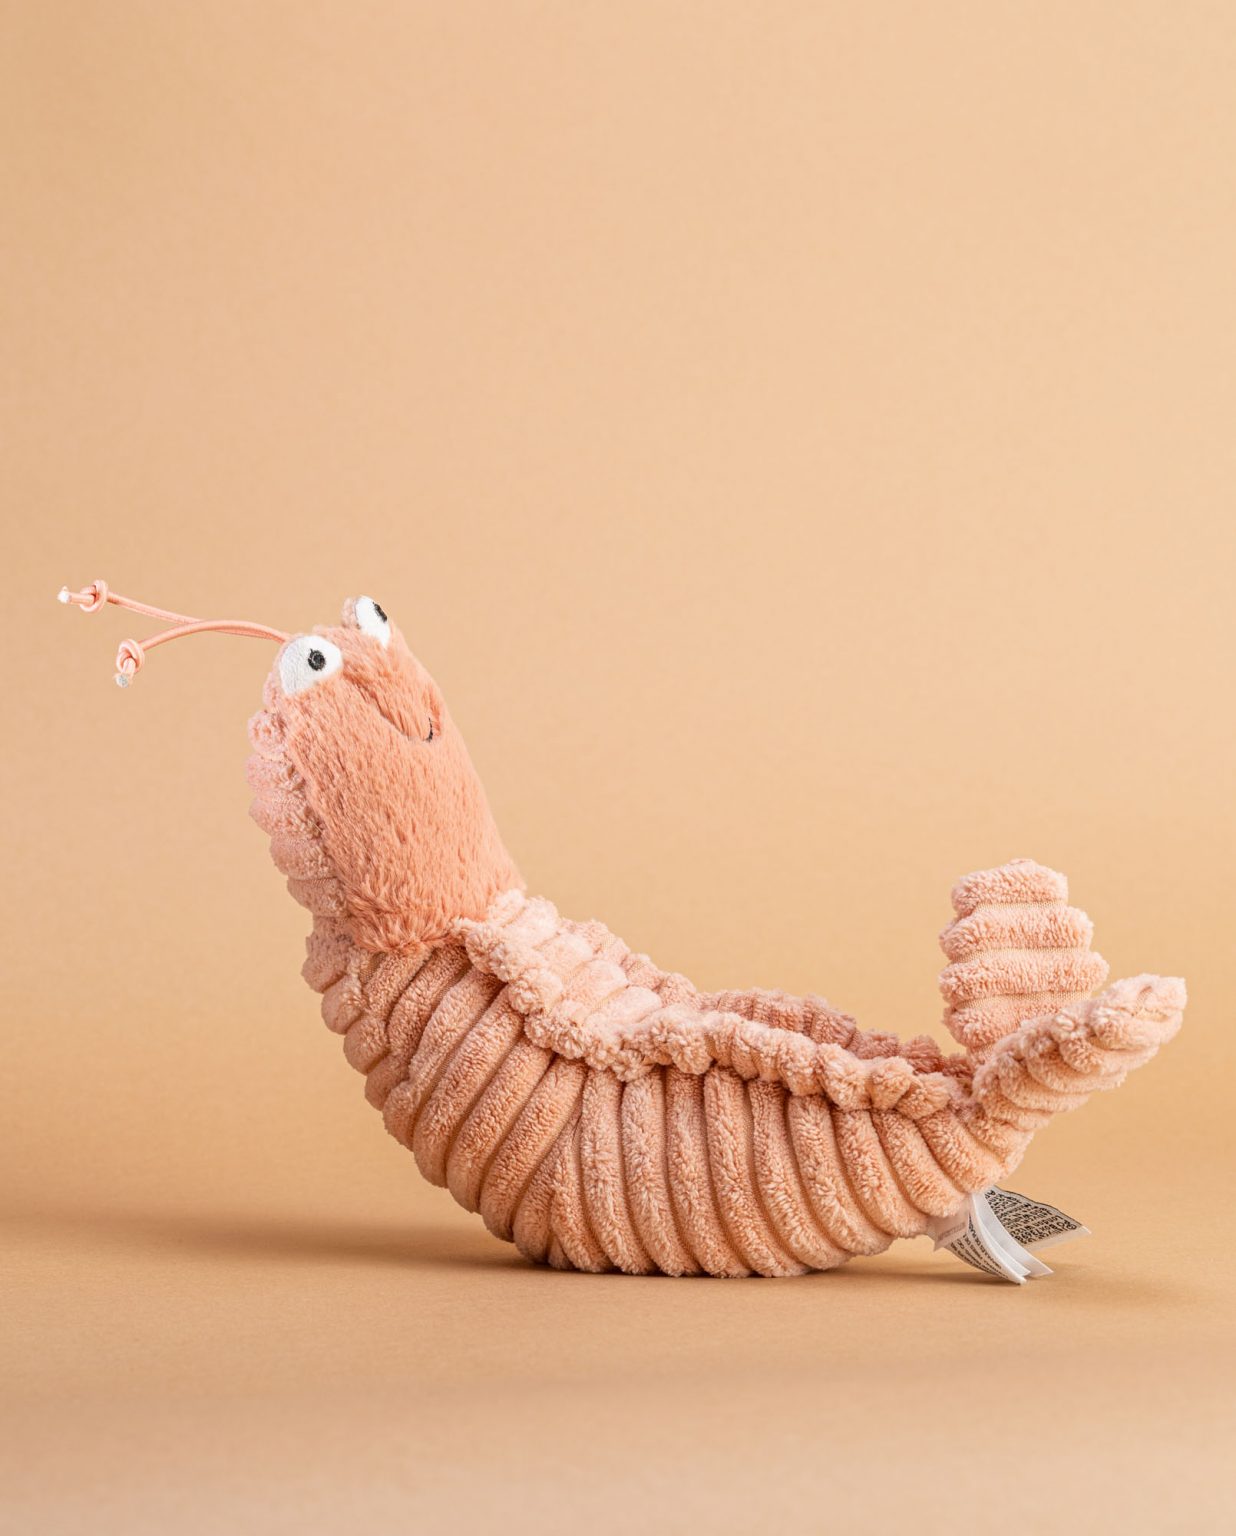 Shrimp Prawn soft toy - Send a Cuddly